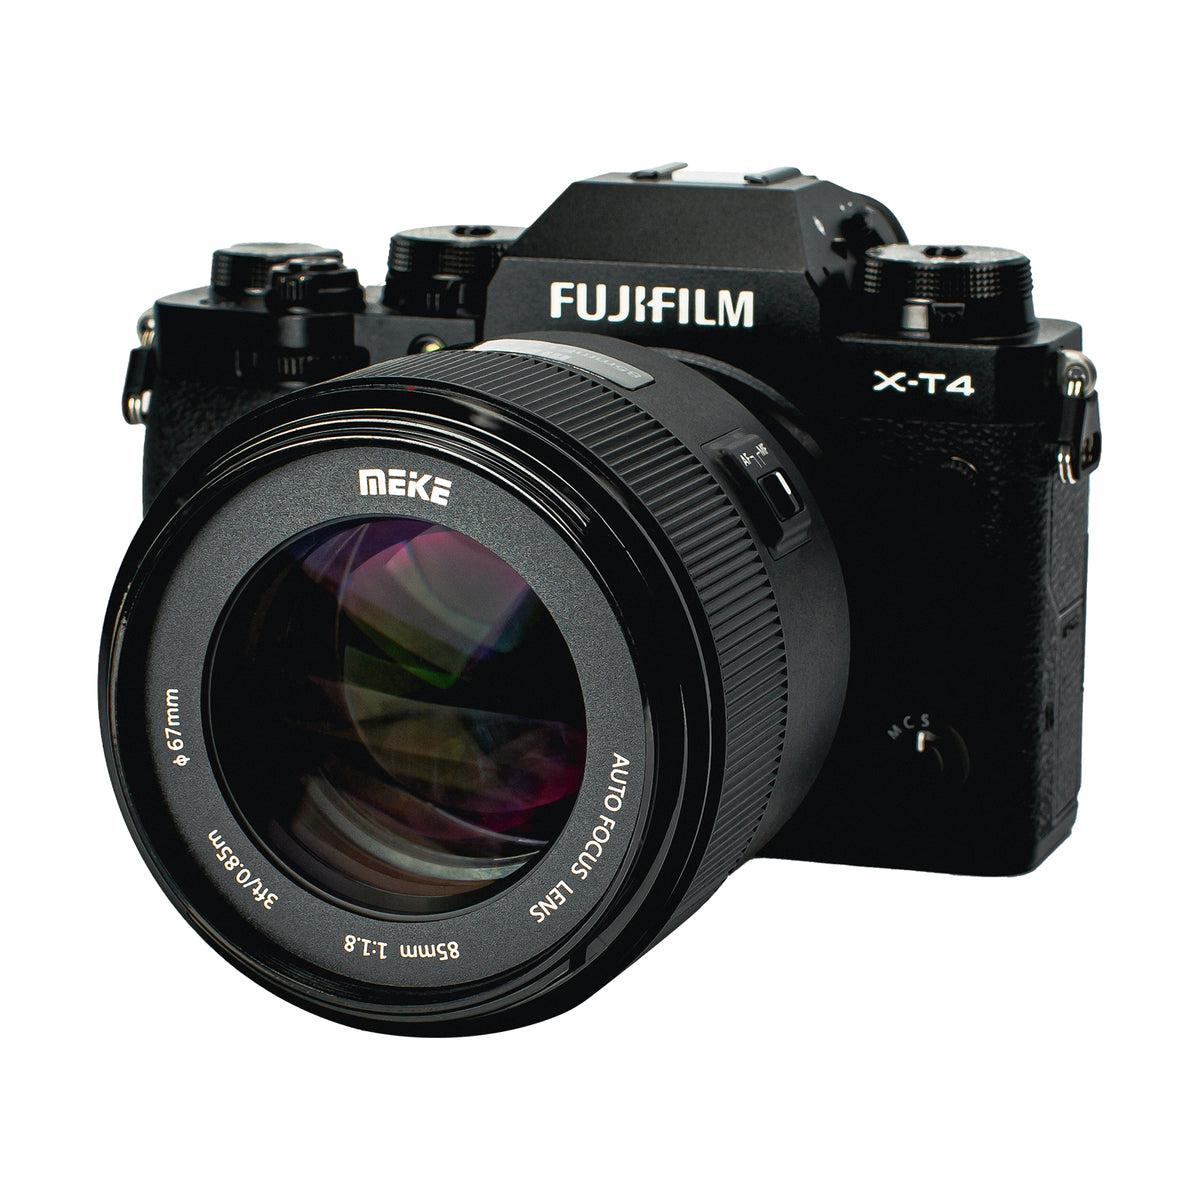 Meike 85mm F1.8 Auto Focus STM Full Frame Lens for E/X/Z Mount 